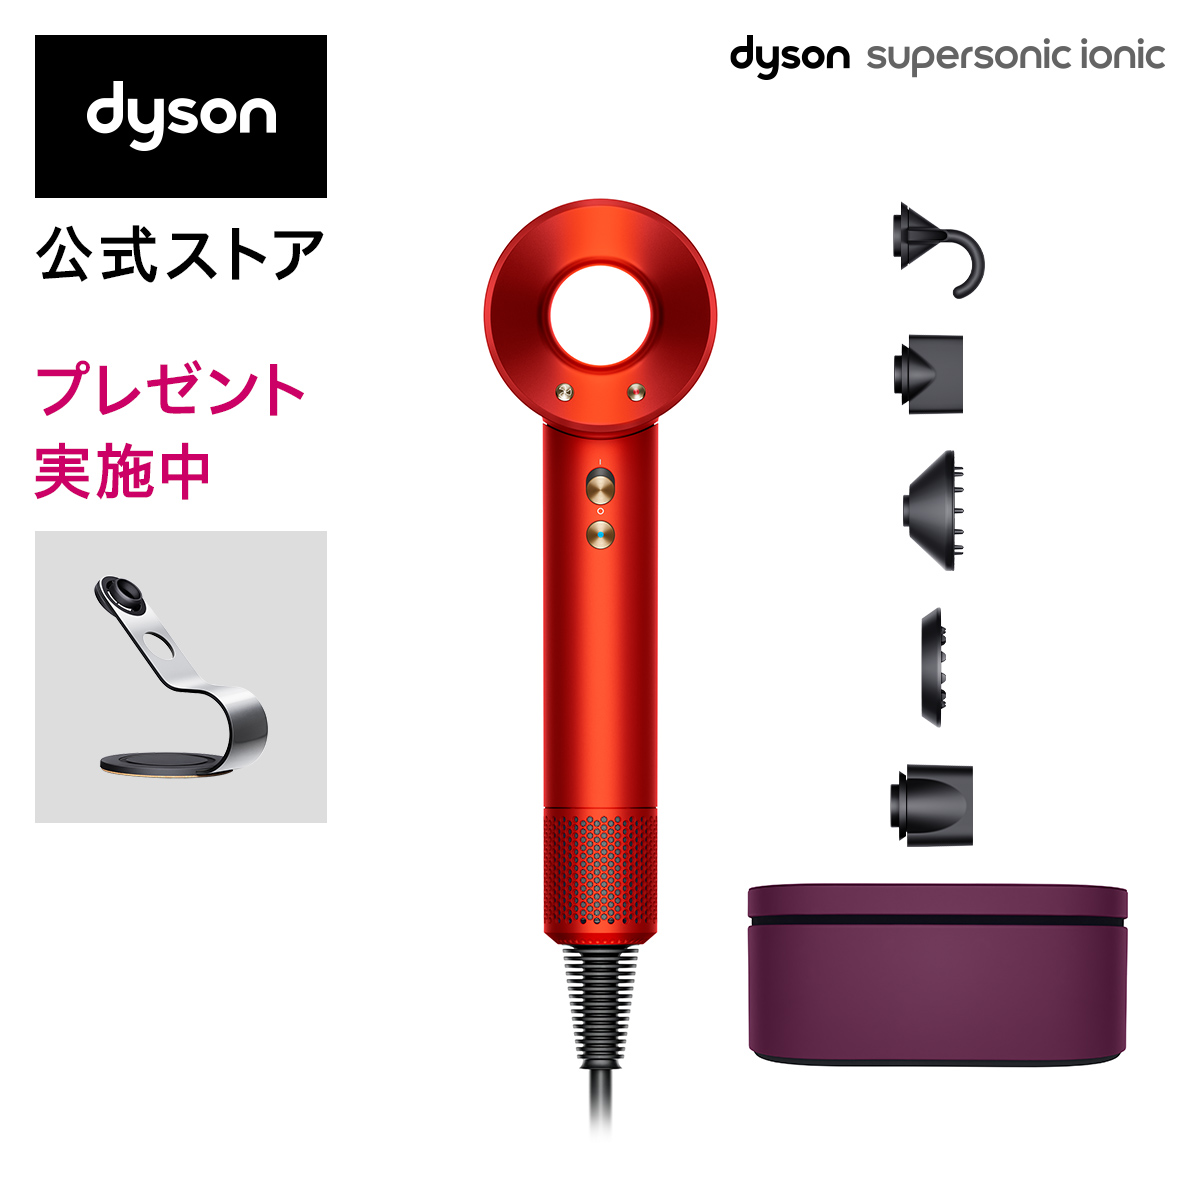 ダイソンドライヤー HD08 dyson supersonic ローズレッド-